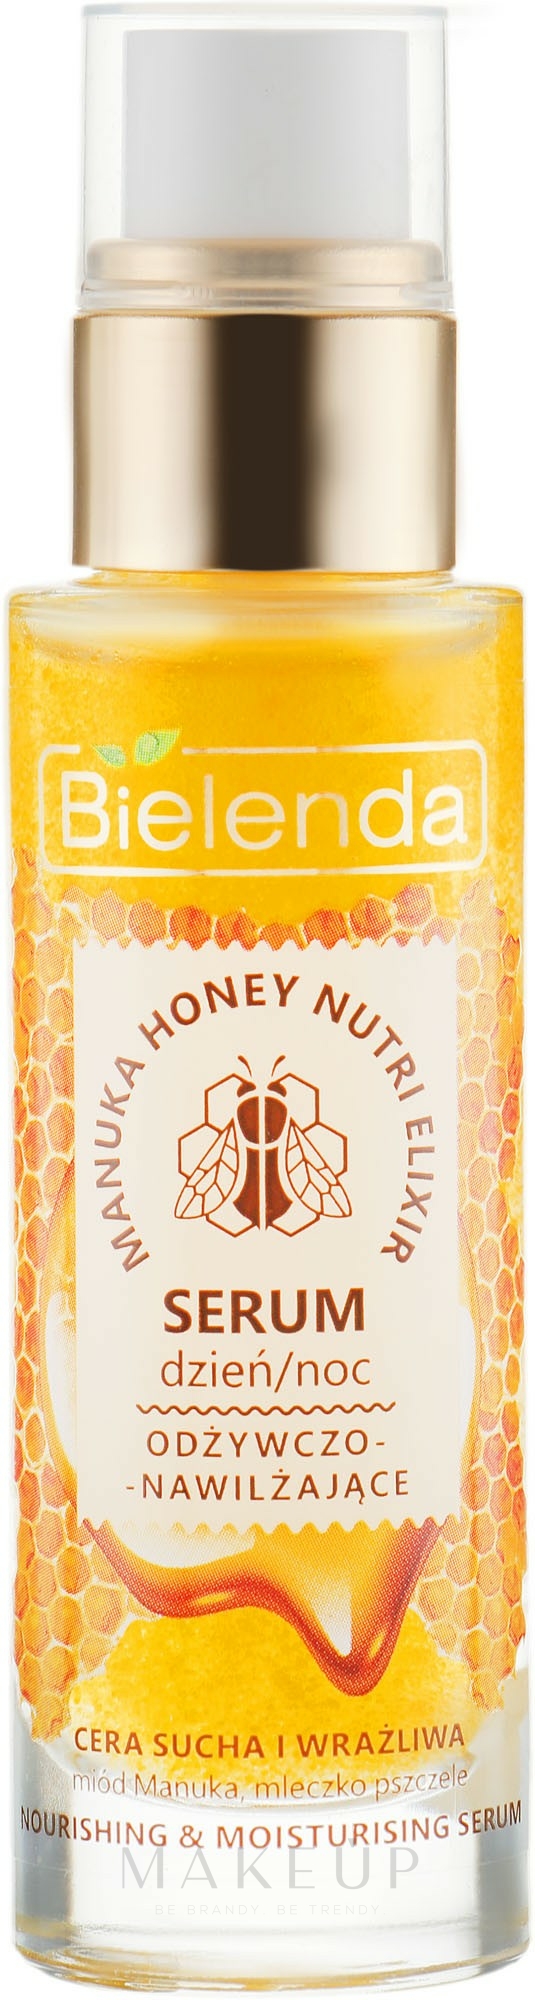 Pflegendes Gesichtsserum für die Tages- und Nachtpflege mit Manuka Honig und Gelée Royale - Bielenda Manuka Honey Nutri Elixir Serum — Foto 30 g